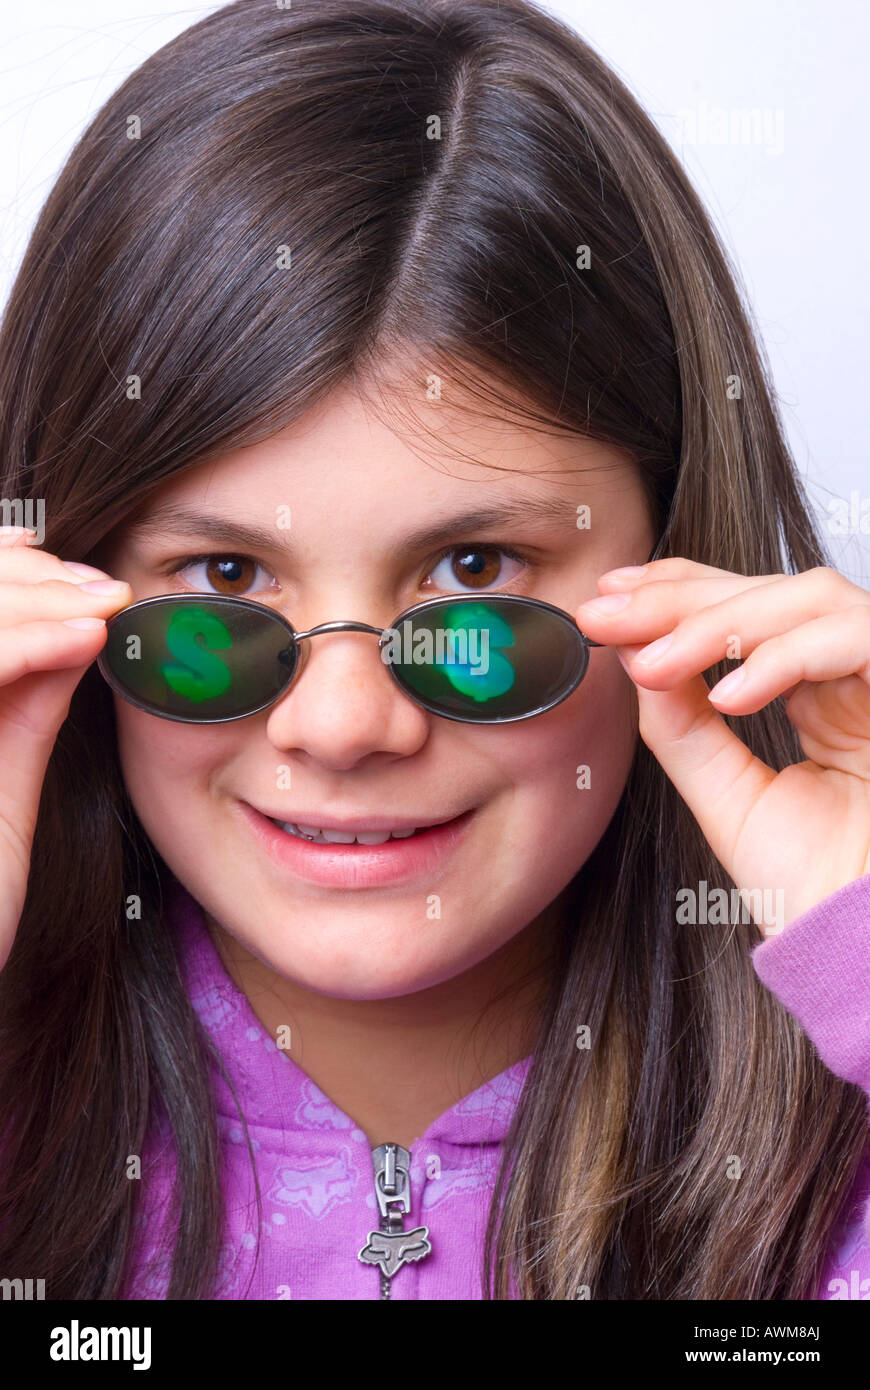 Giovane ragazza che indossa un paio di occhiali di divertimento con segni di dollaro sulle lenti Foto Stock